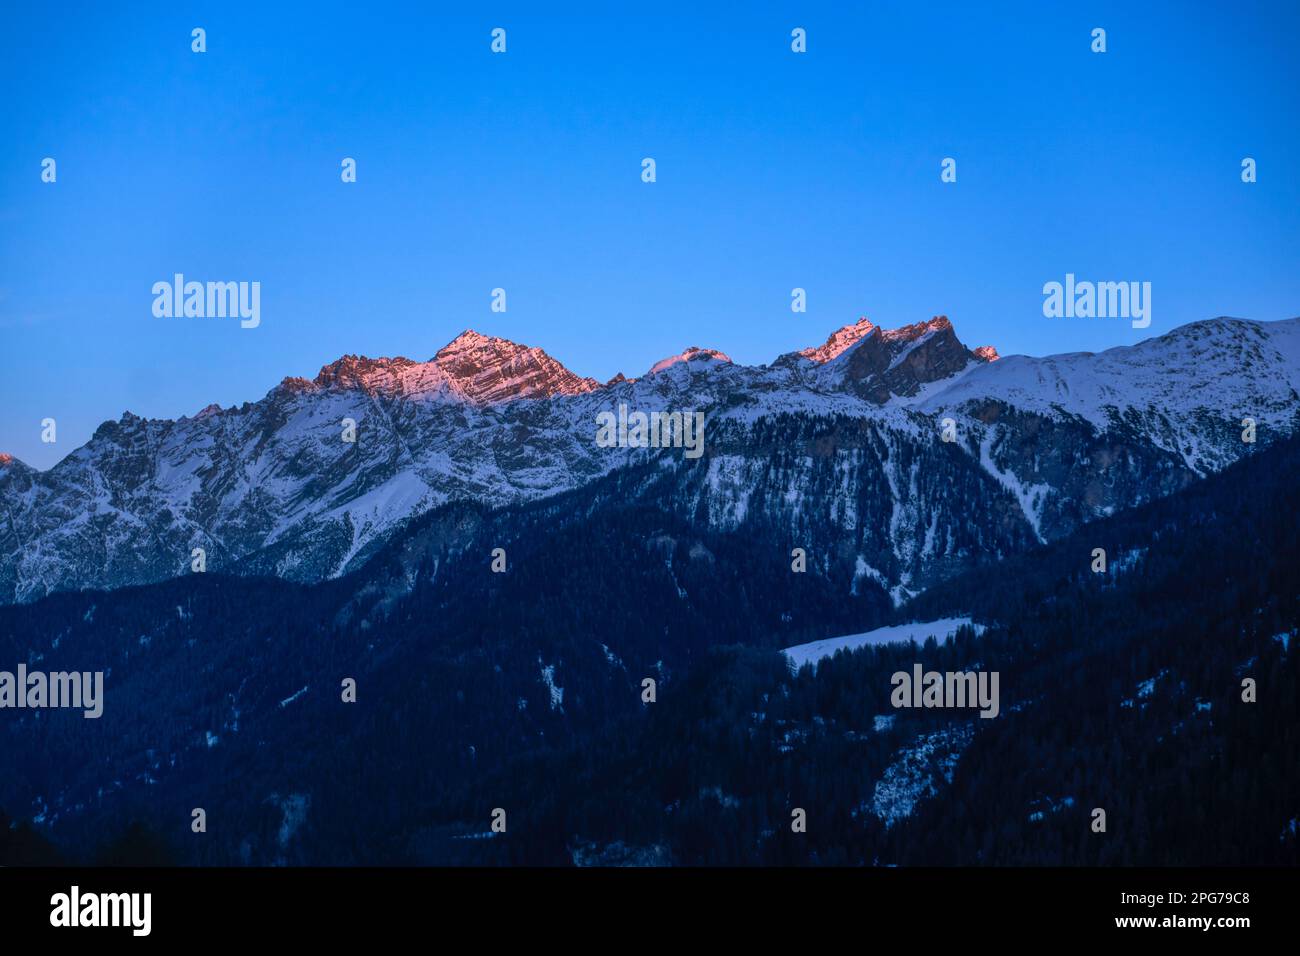 Sonnenuntergang, mit Gipfeln wie Muot la Seila (2.387 m) und Piz Sursass (2.910 m) in Orange/Pink, aus Guarda, Niederengadin, Schweiz Stockfoto